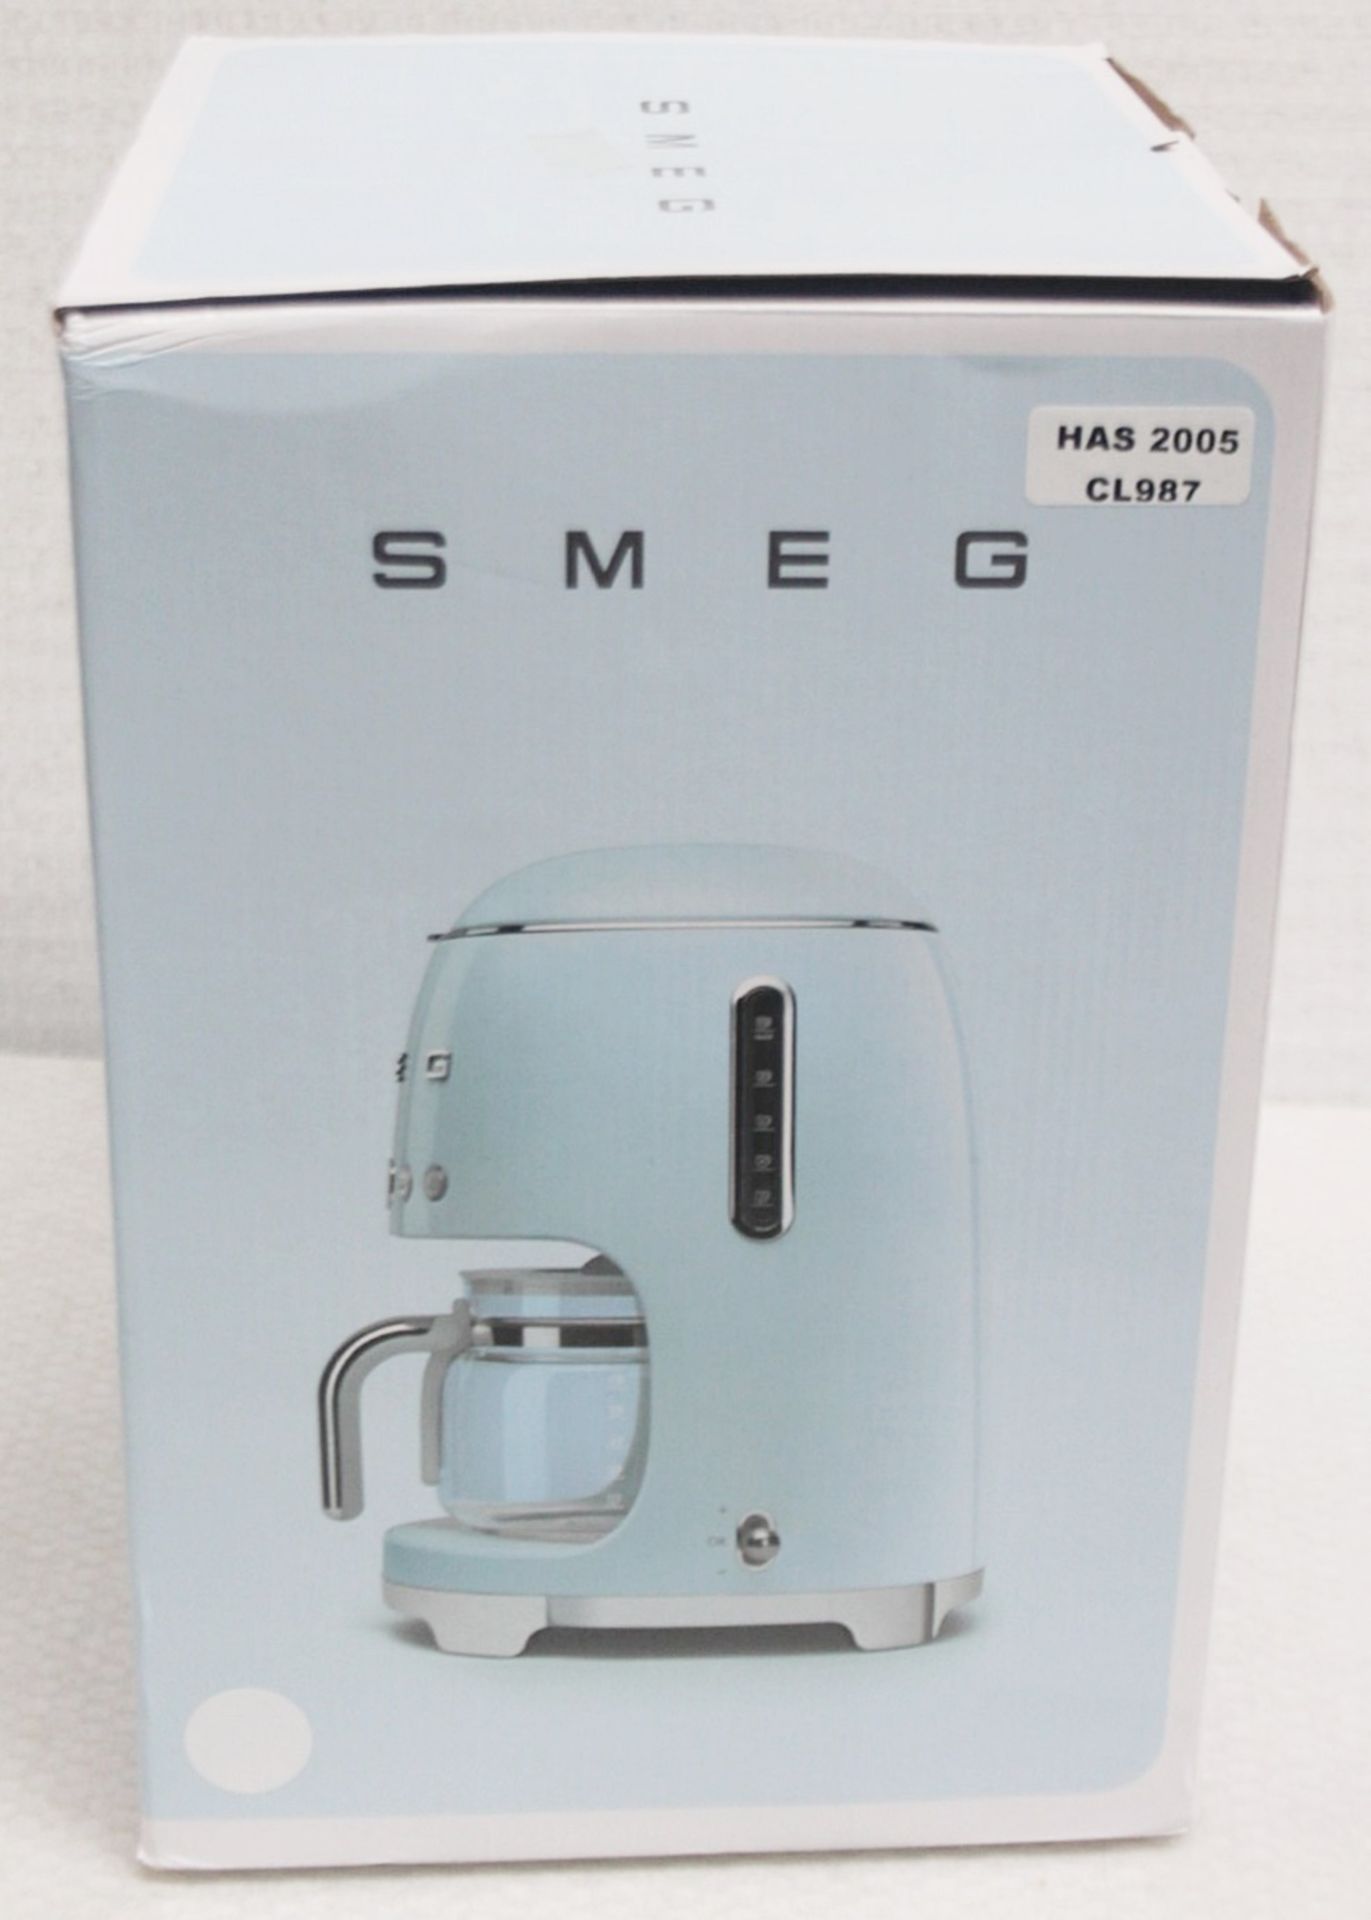 1 x SMEG Drip Retro-Style Filter Coffee Machine, With Digital Display - Original Price £199.00 - Image 16 of 17